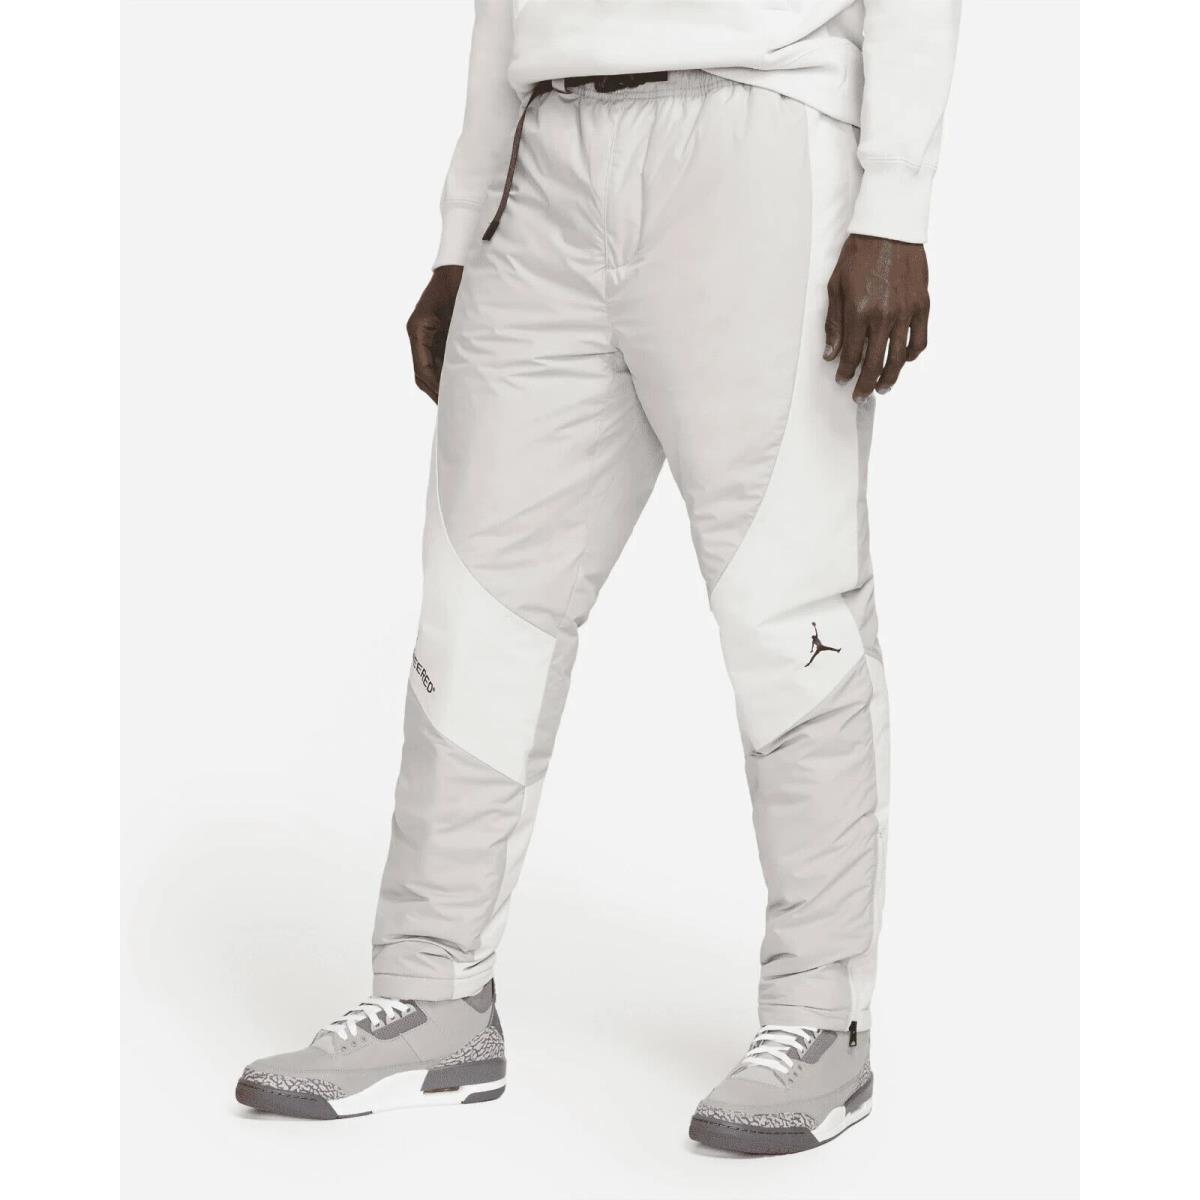 Nike Jordan 23 Engineered Primaloft Water Repellant Pants DC9658-033 Snowboard